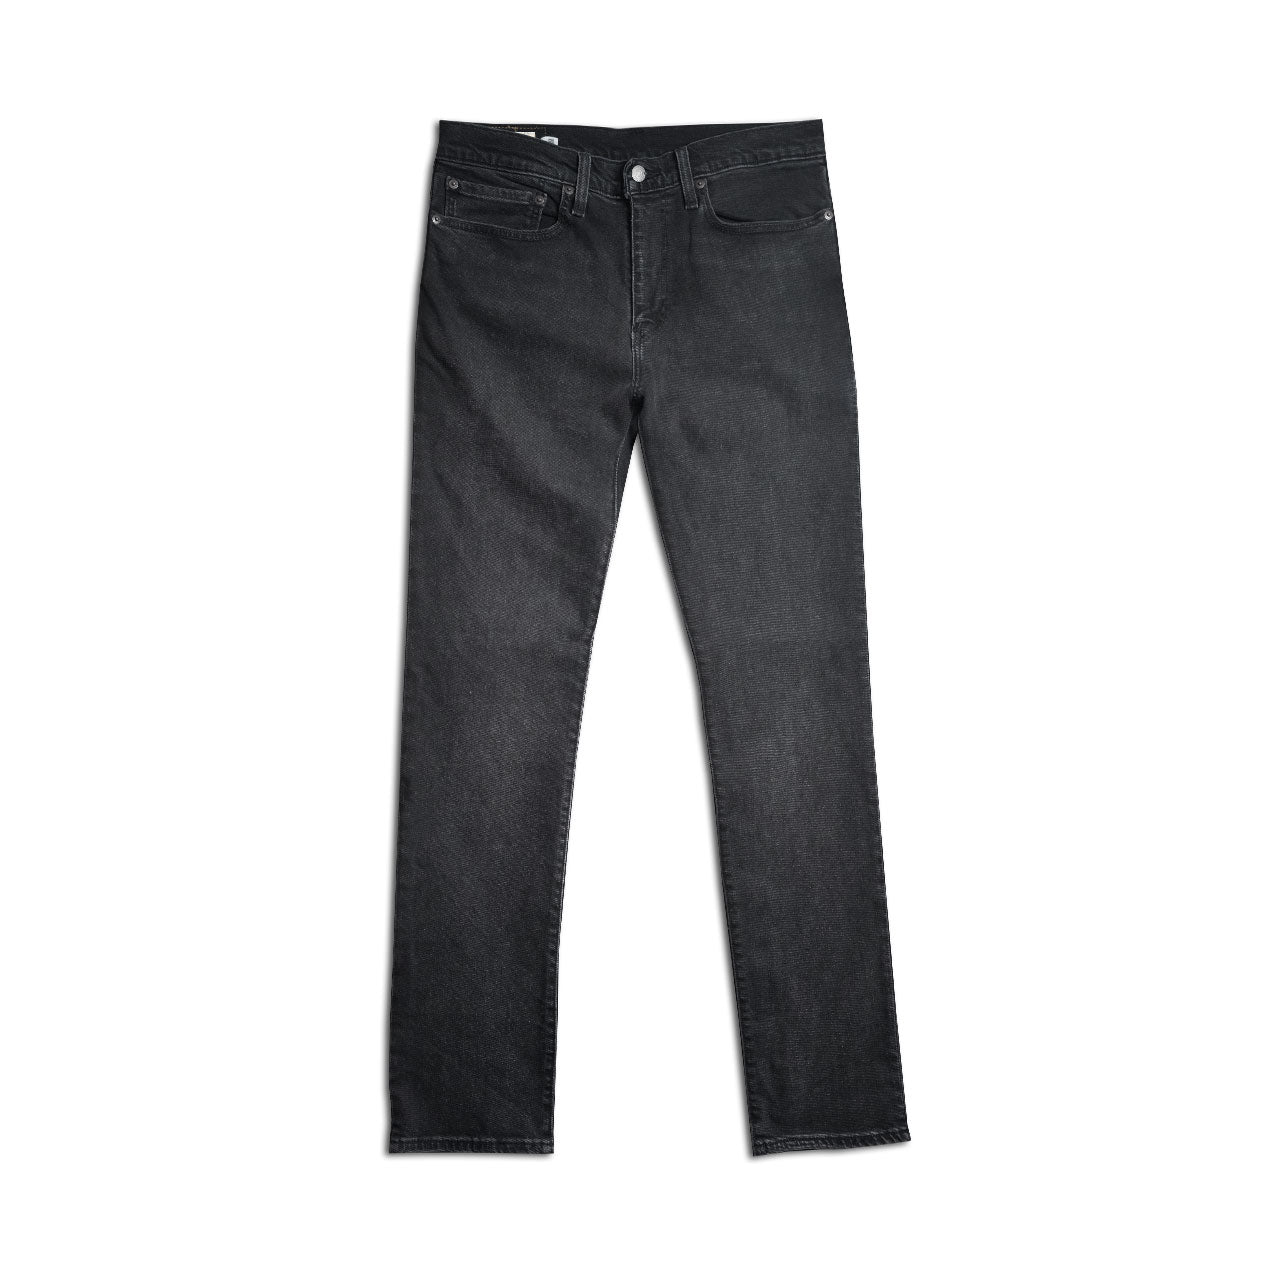 Levi's Premium 511 Black Rinse Jeans